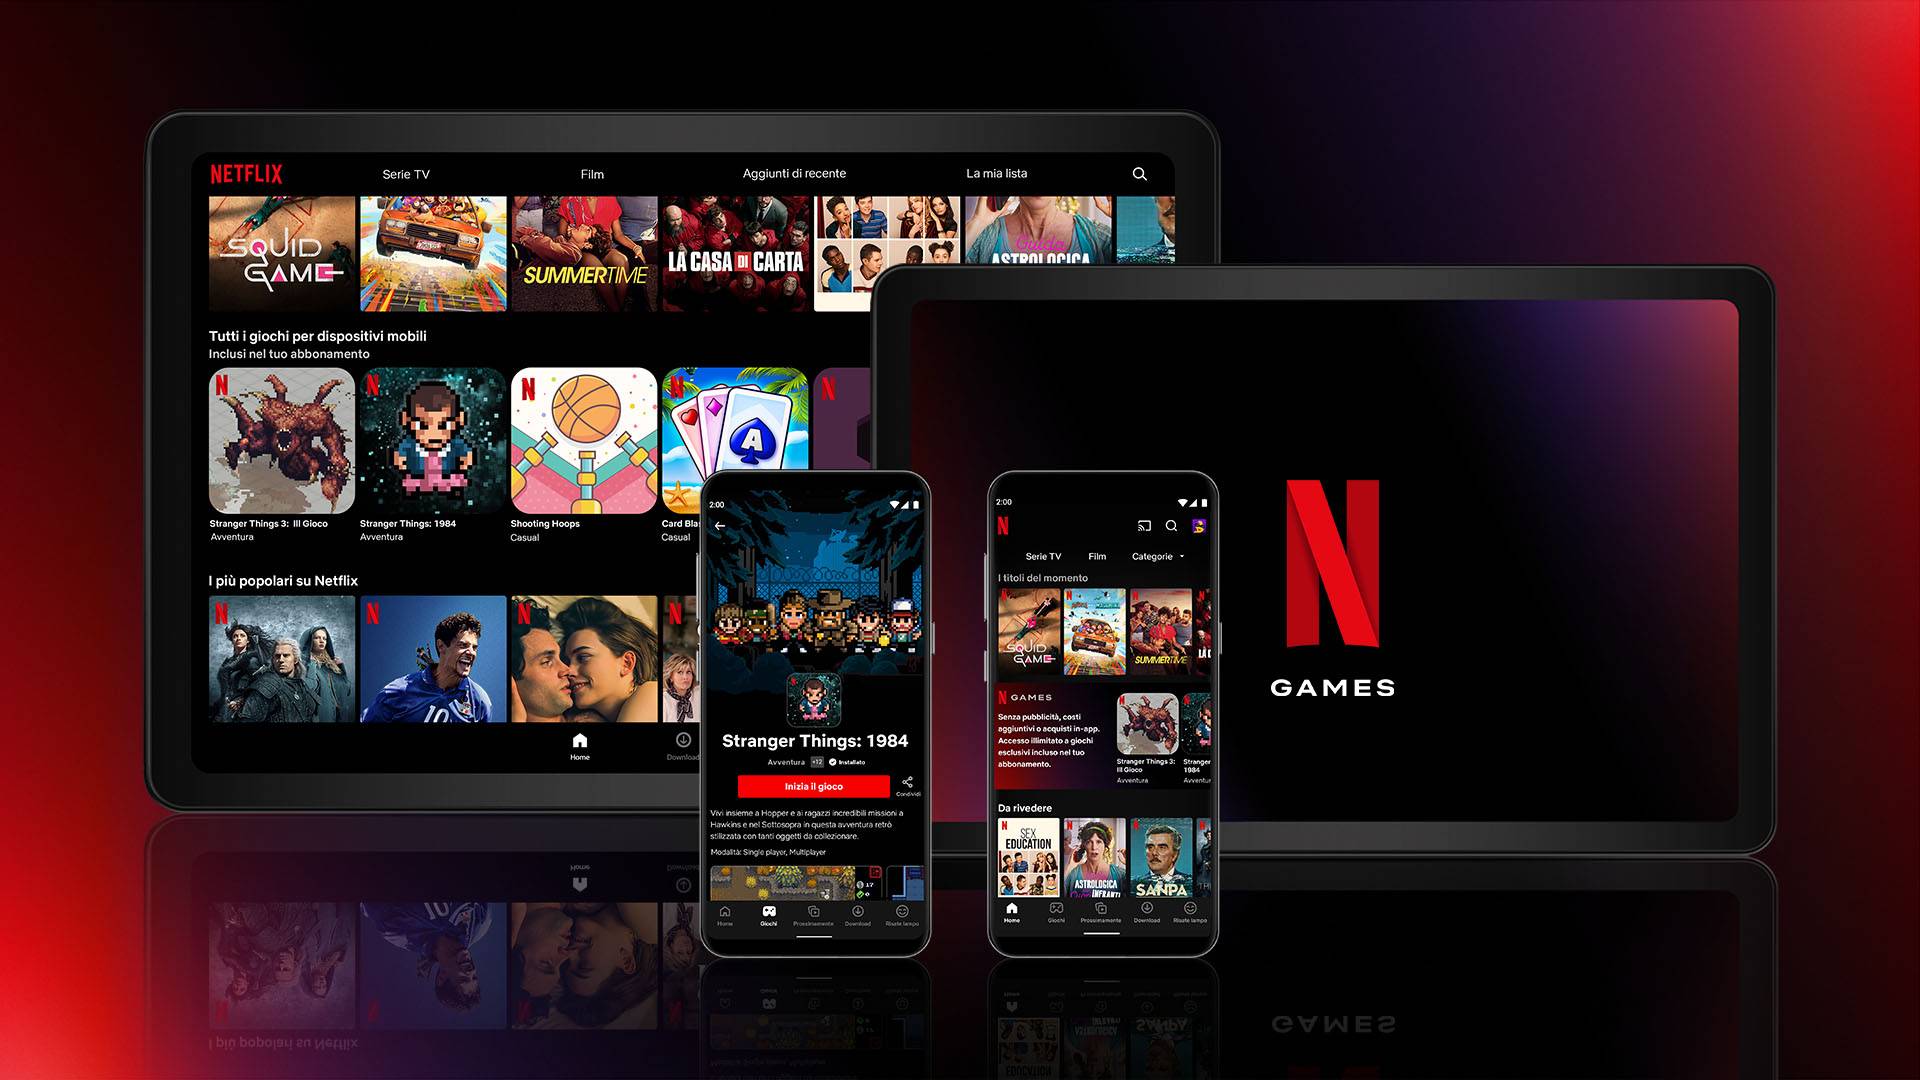 Der mutige Sprung von Netflix: Gaming durch nahtloses Streaming revolutionieren